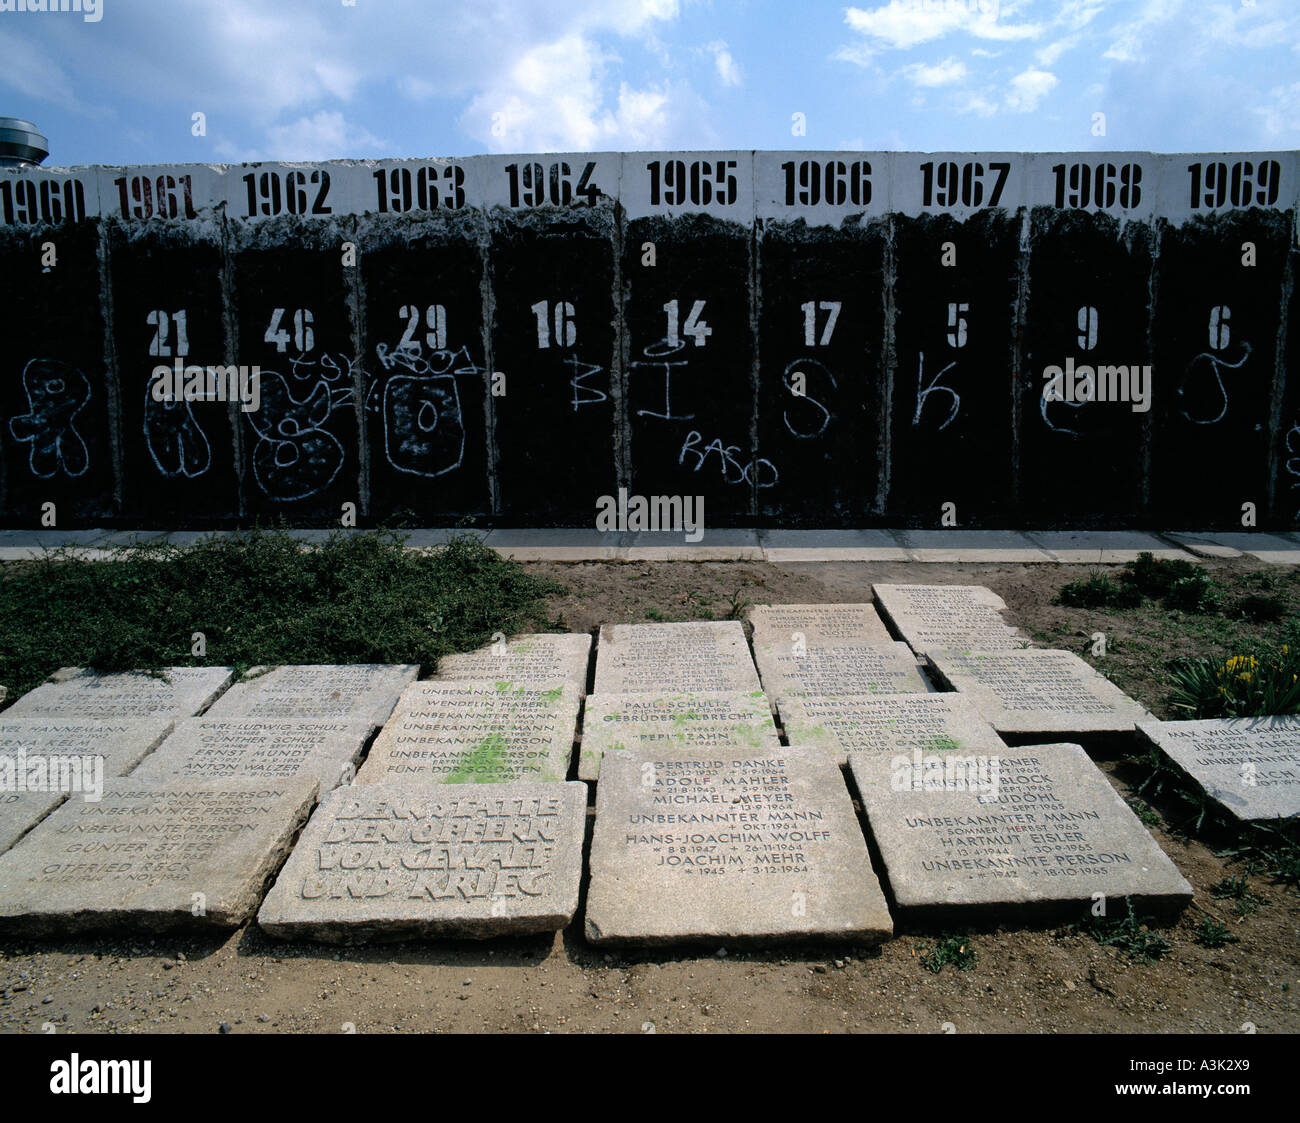 D-Berlino, luogo commemorativo in onore dei morti di persone presso il Muro di Berlino, il muro di Berlino era il confine tra Berlino Ovest e Berlino Est dal 13 agosto 1961 fino al 9 novembre 1989 Foto Stock